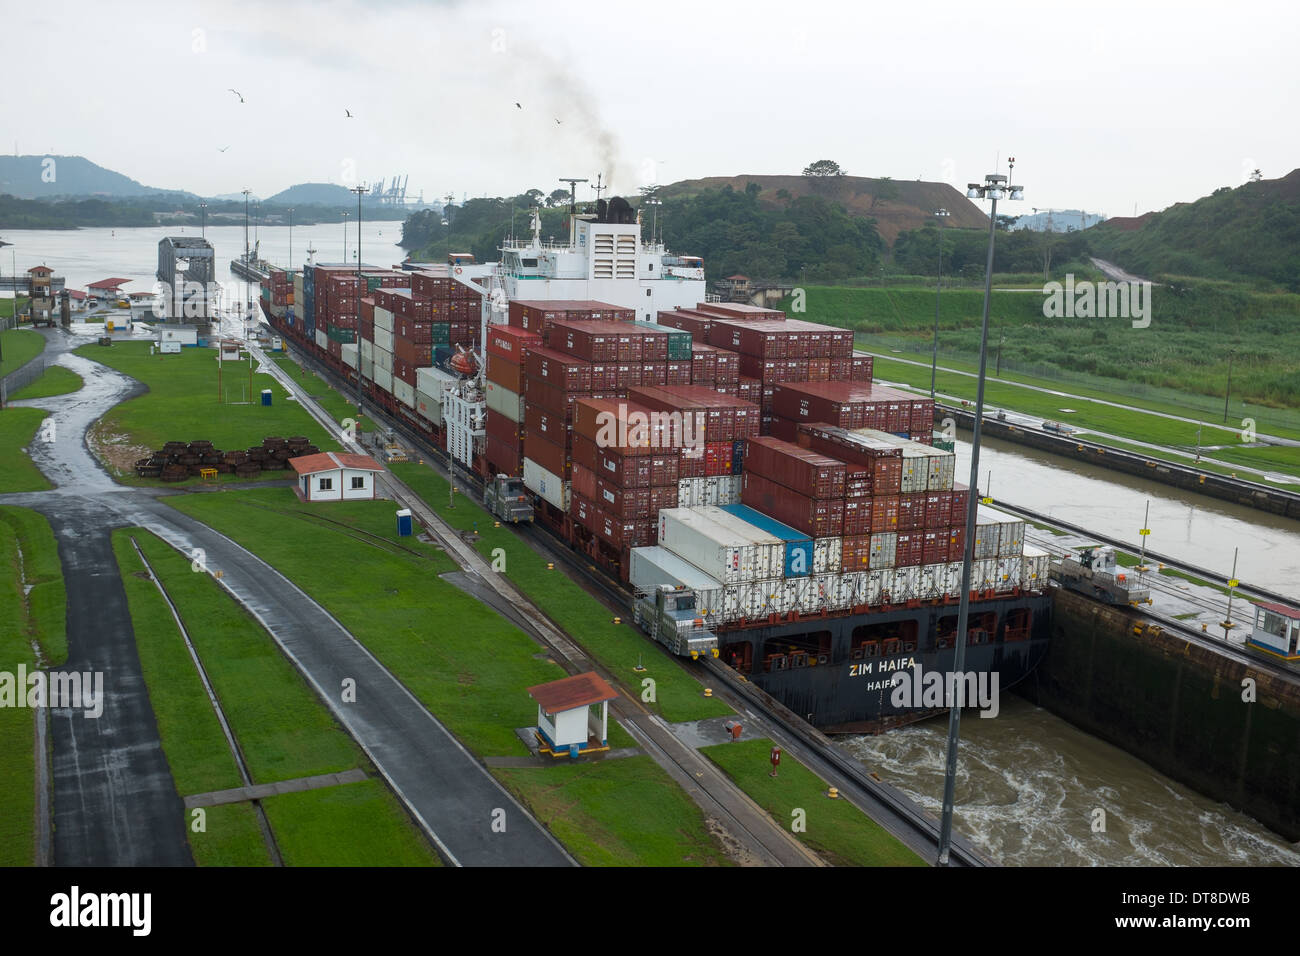 Il Miraflores Locks sul Canale di Panama sono un ingegnere marvel, gigante permettendo alle navi di passare dal Pacifico per gli oceani Atlantico. Foto Stock